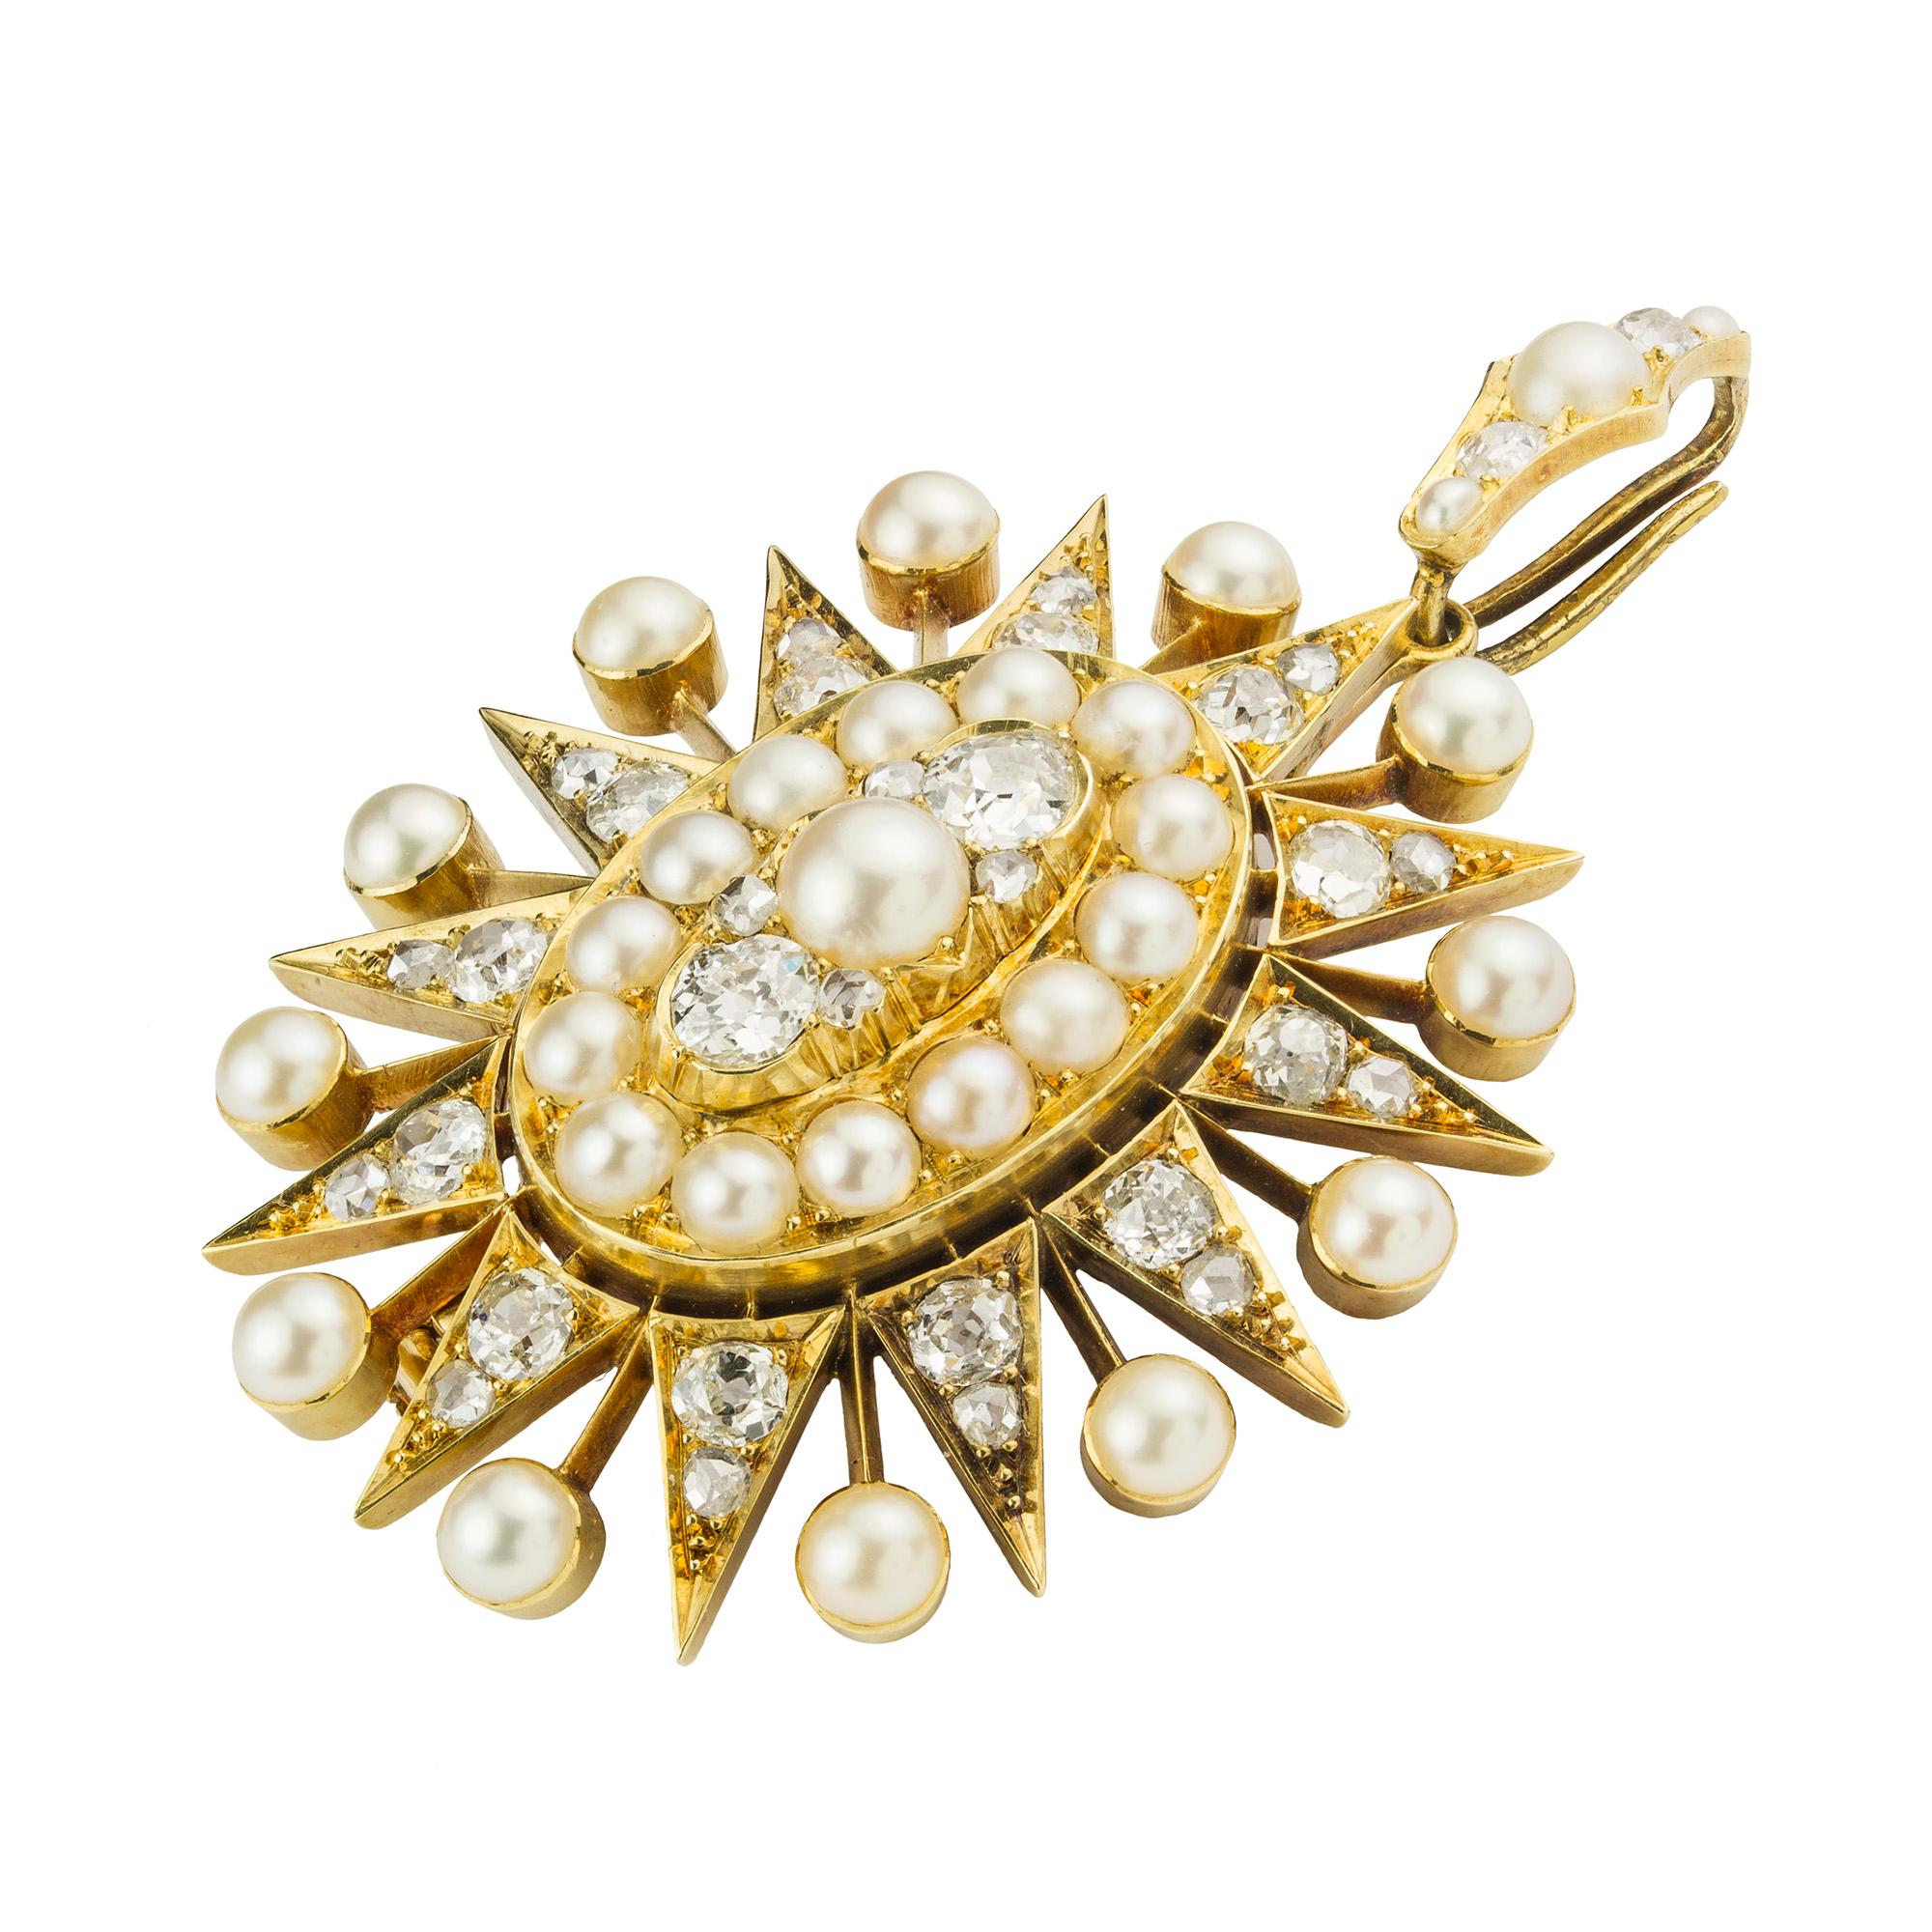 Eine viktorianische Perlen- und Diamantbrosche mit ovalem Sternanhänger, die zentrale Halbperle mit einem Paar Diamanten im Alt- und Rosenschliff, umgeben von einer Reihe von Halbperlen, umrahmt von abwechselnden Strahlen aus Diamanten und Perlen,